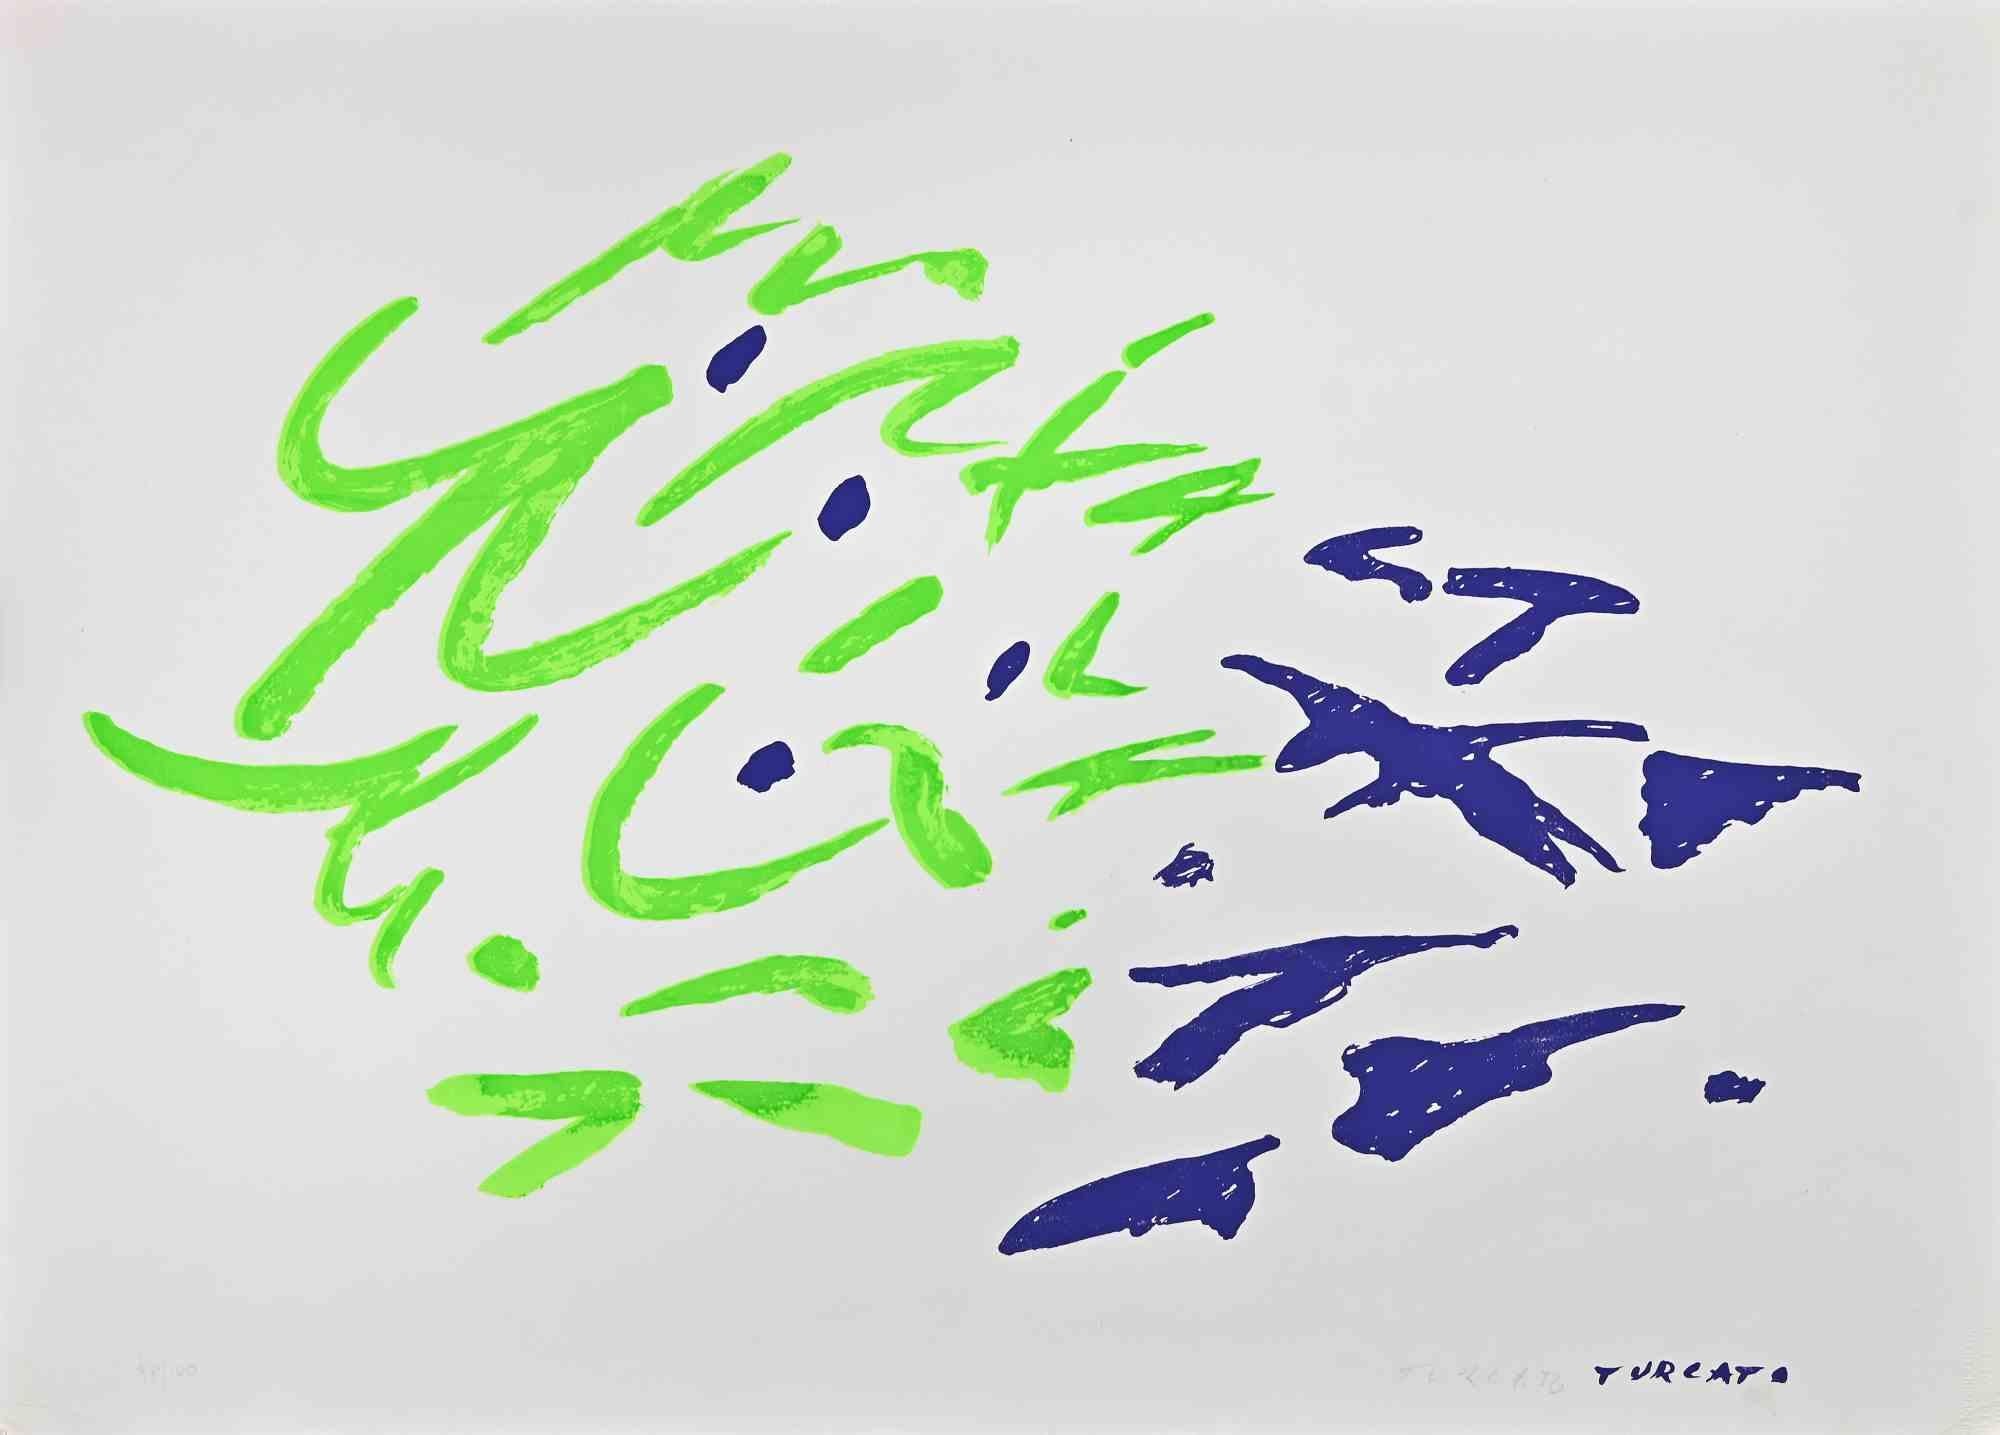 Abstract Composition ist ein farbiger Siebdruck des zeitgenössischen Künstlers Giulio Turcato aus dem Jahr 1973.

Handsigniert mit Bleistift unten rechts.

Nummeriert. Edition,98/100.

Echtheitslabel von La Nuova Foglio auf der Rückseite. 

Gute